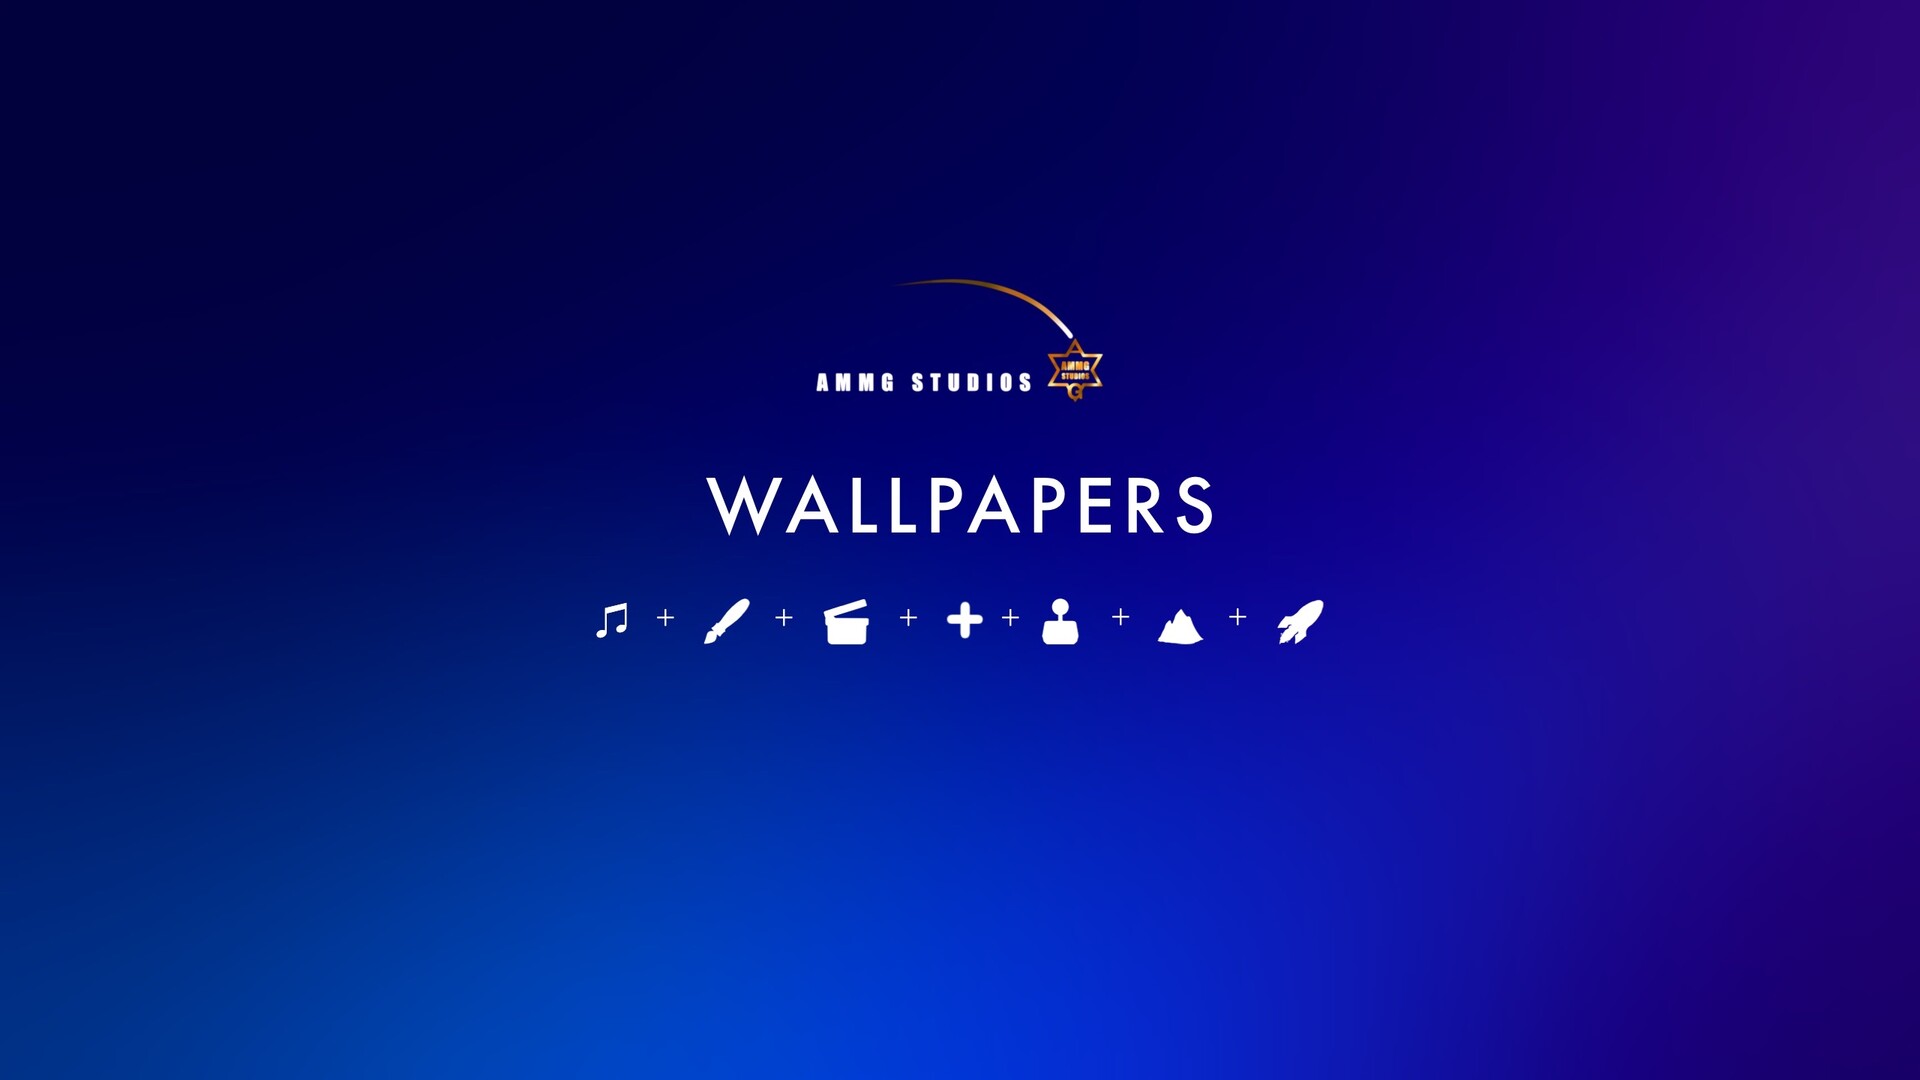 ArtStation - AMMG WALLPAPER